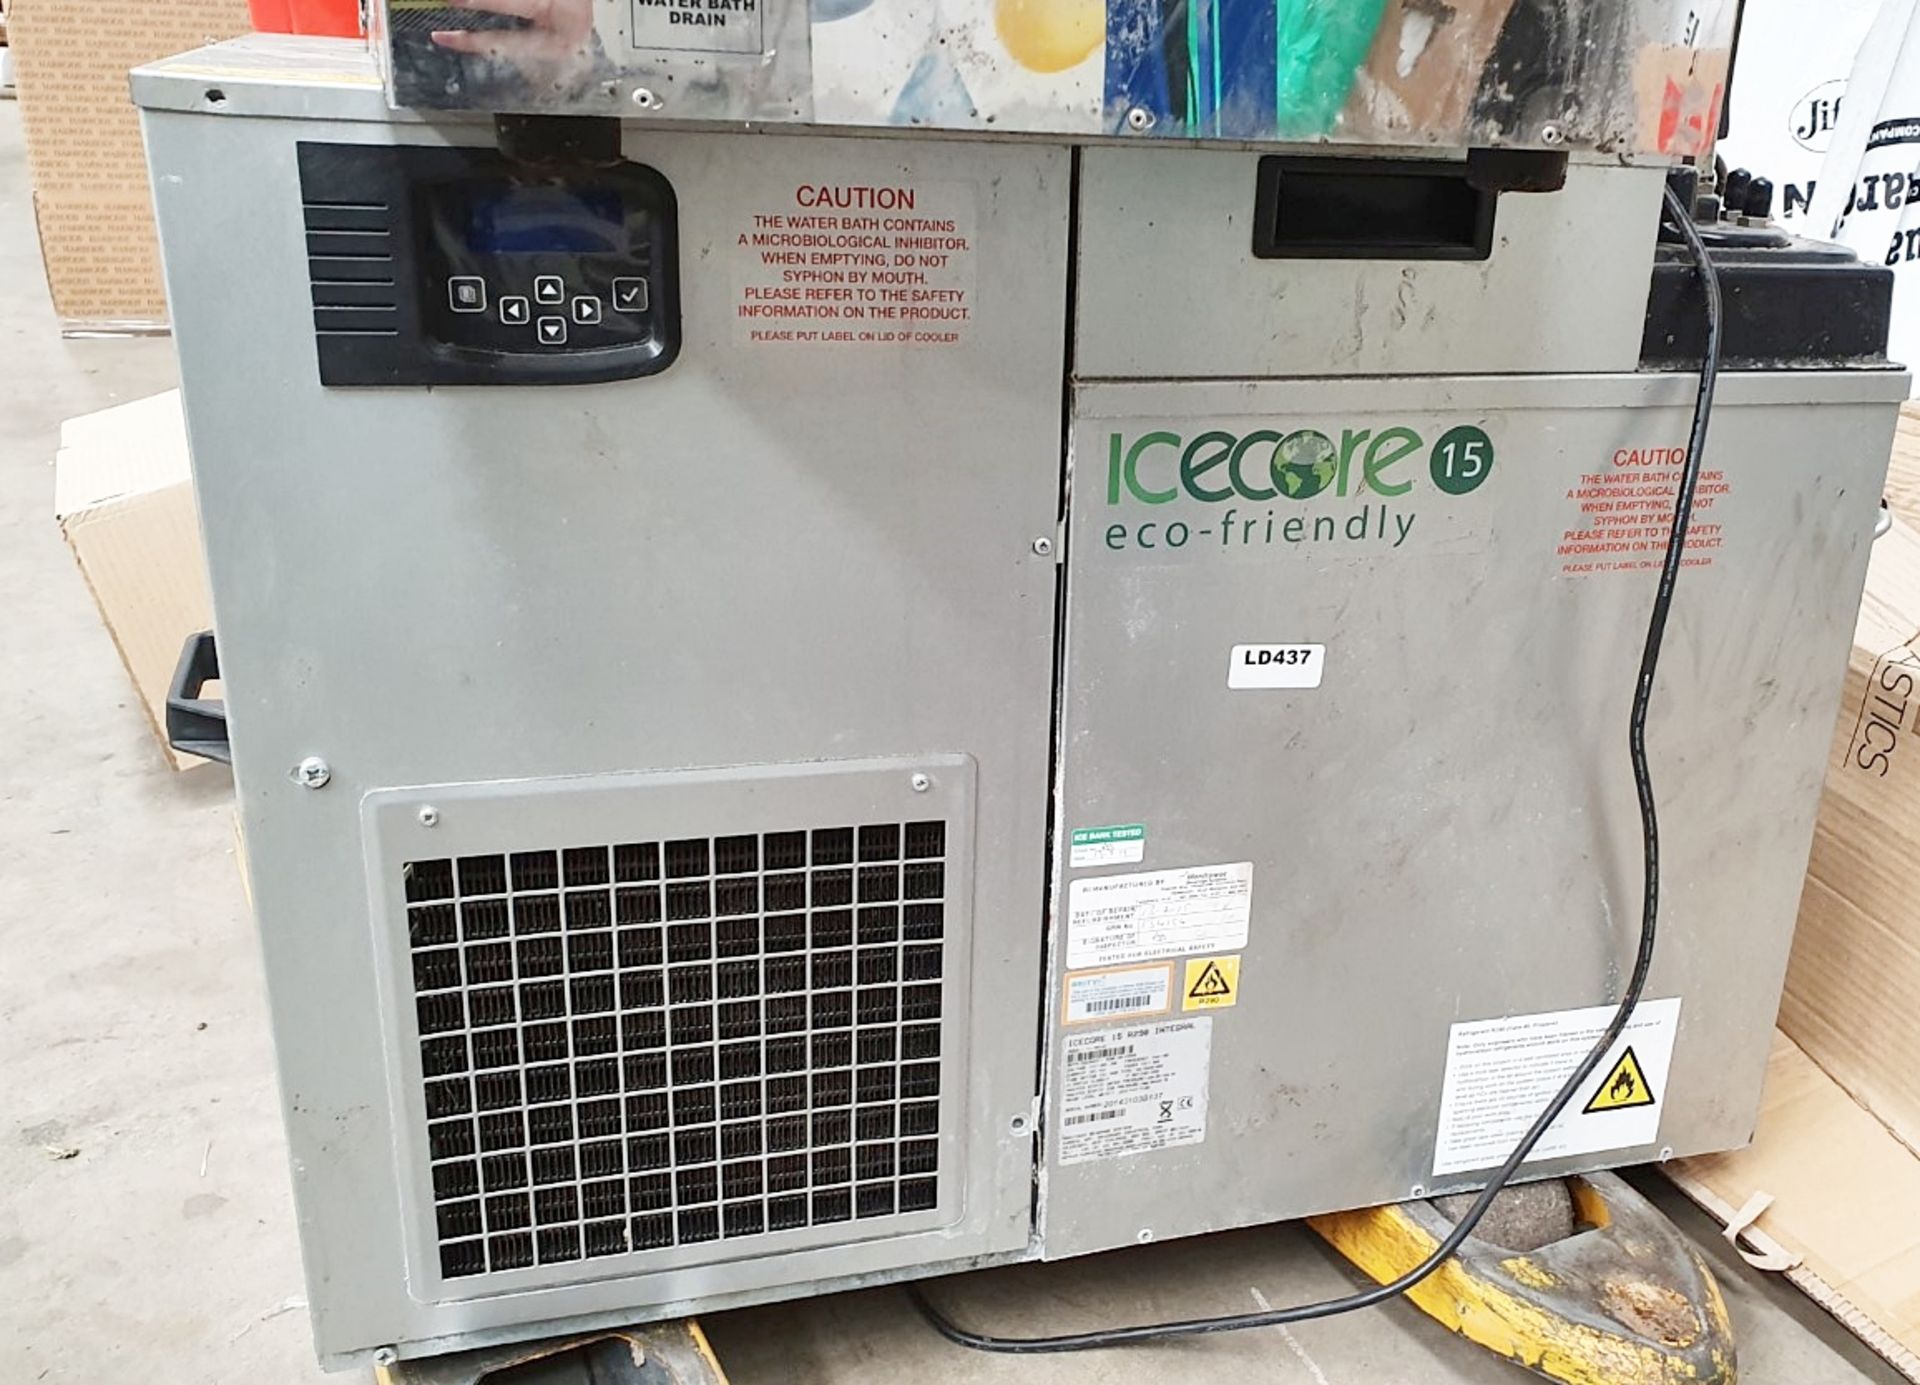 1 x Icecore Eco Friendly 15 Remote Cooler - Ref: LD347 - CL417 - Altrincham WA14 - Image 16 of 16